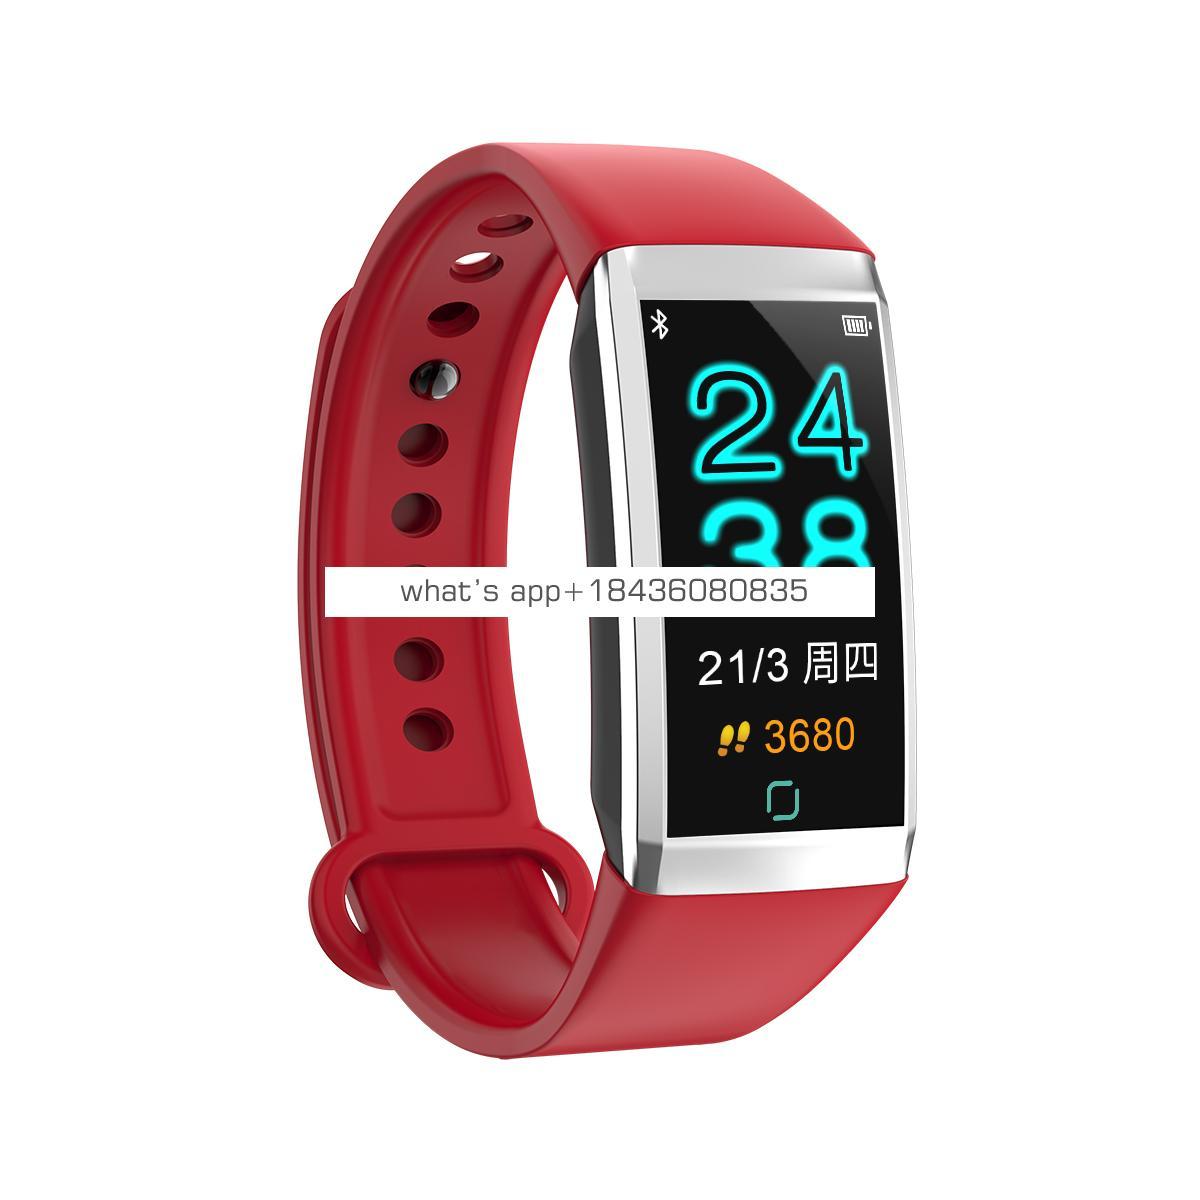 Bracelet smart watch Waterproof smart watch factory bracelet smart watch with heart rate monitor